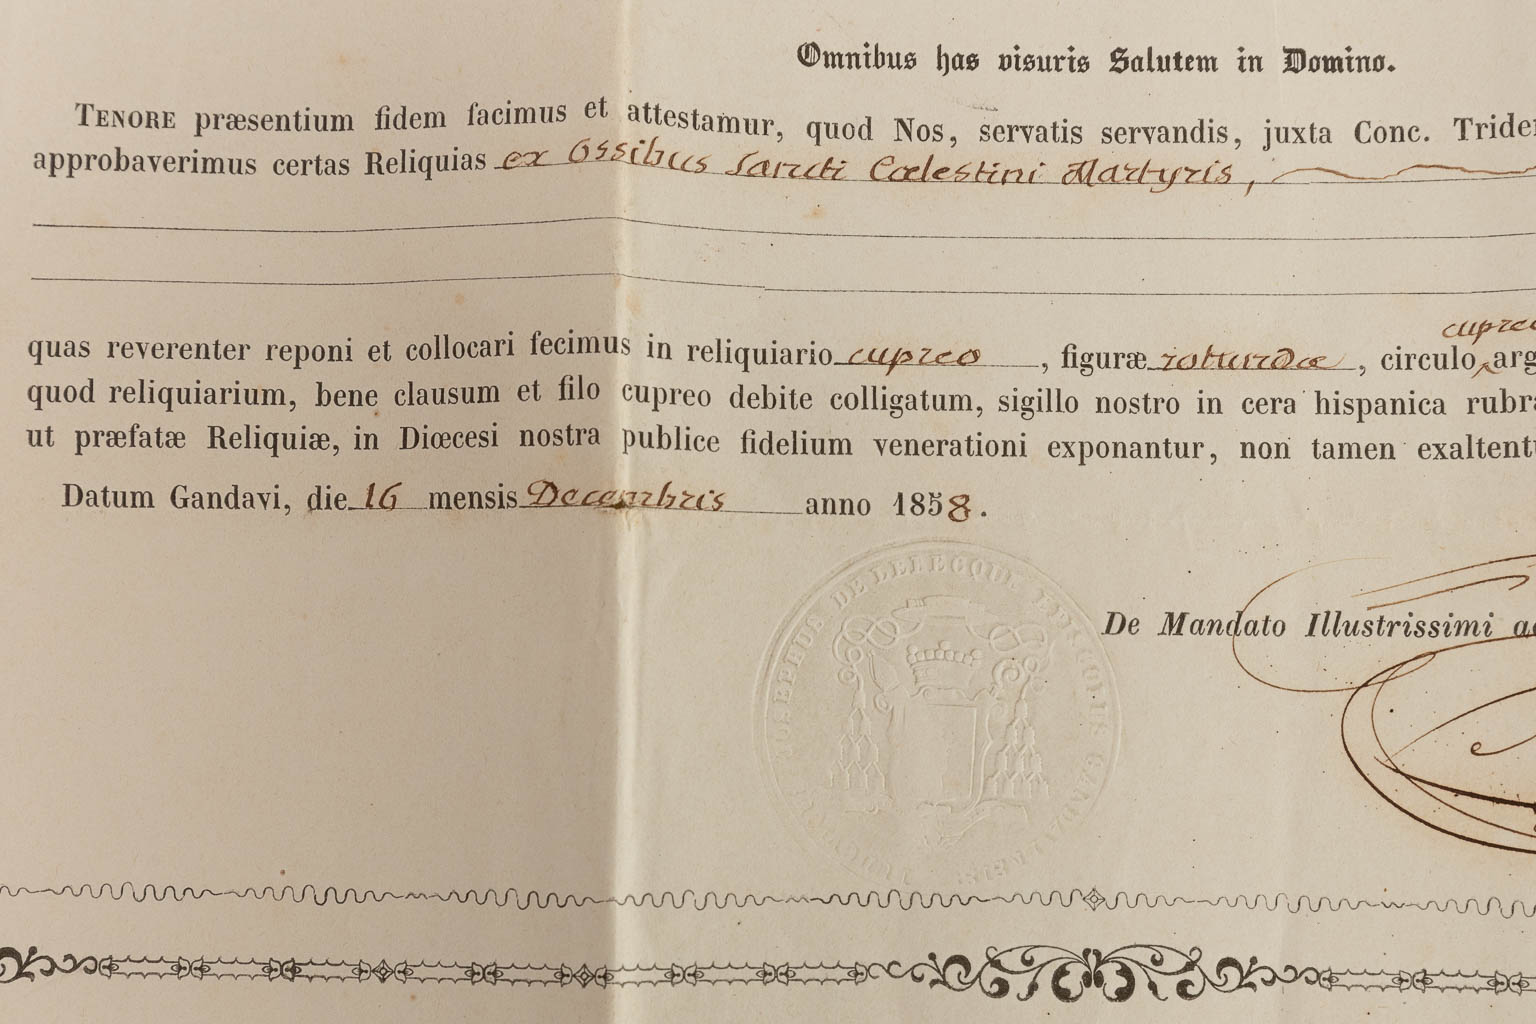 A Sealed Theca with a relic: Ex Ossibus Sancti Caelestini Martyris